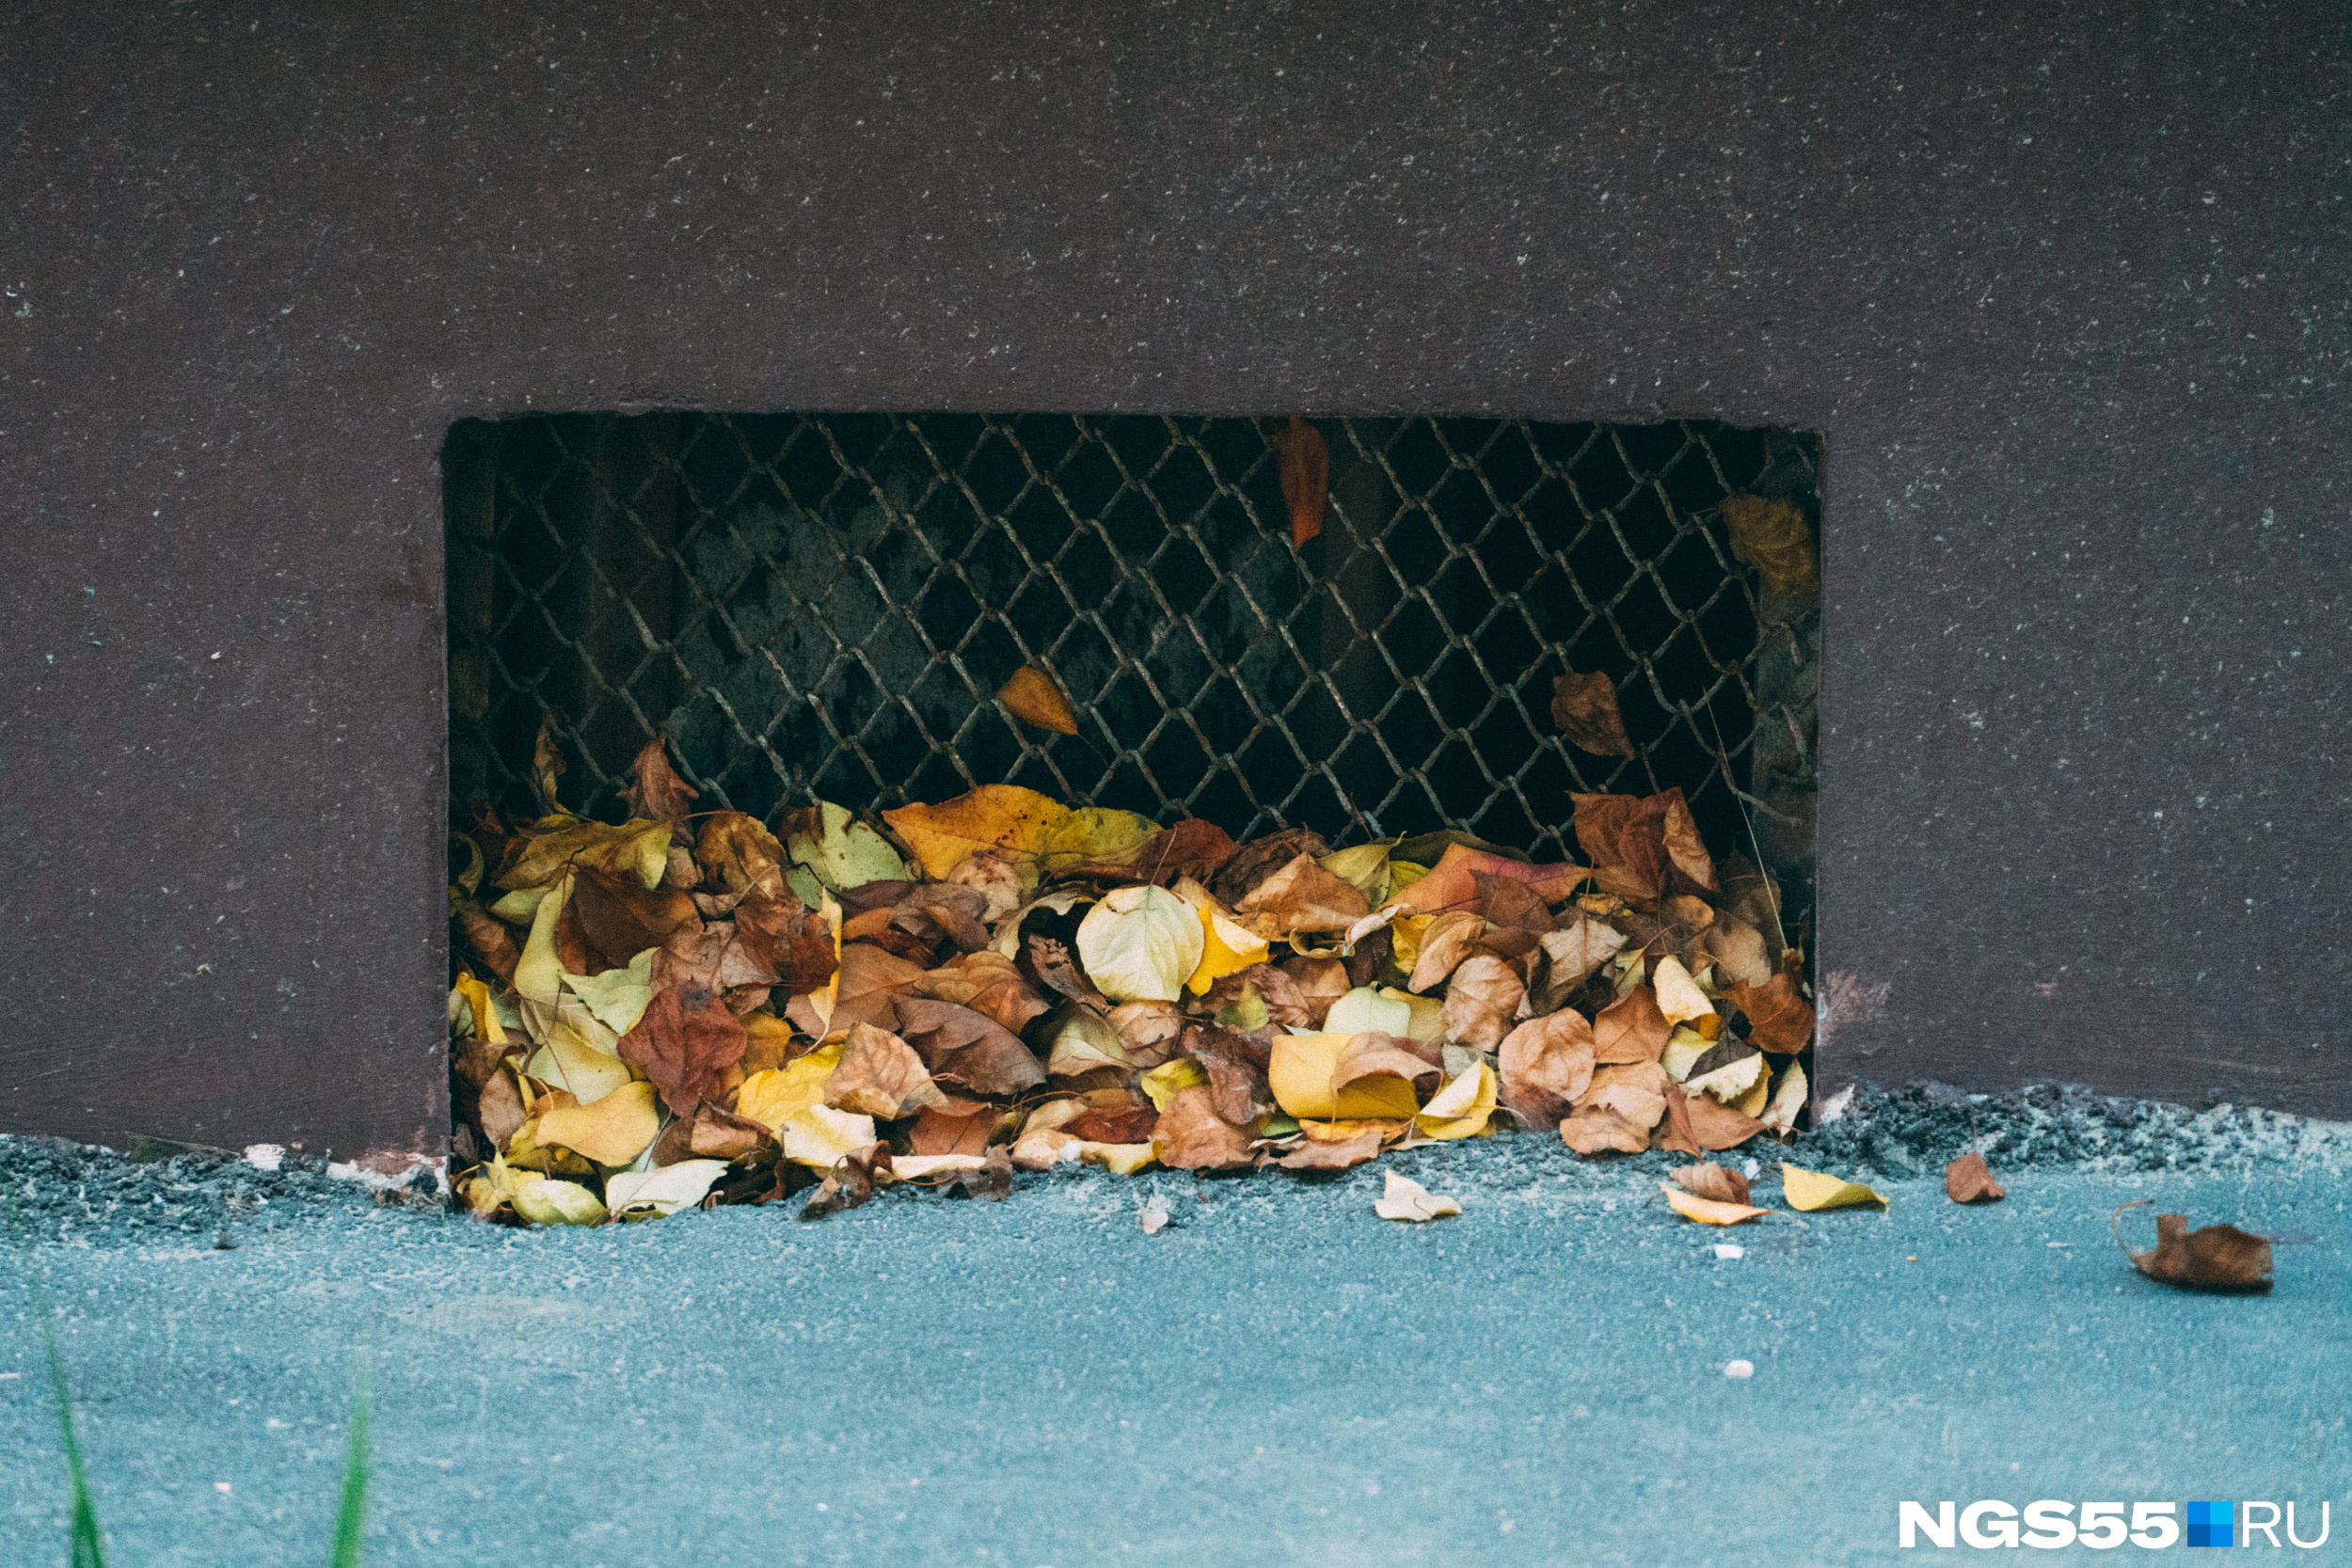 Дворник сгребает опавшую листву к подвальным решёткам, словно здесь они совсем не нужны